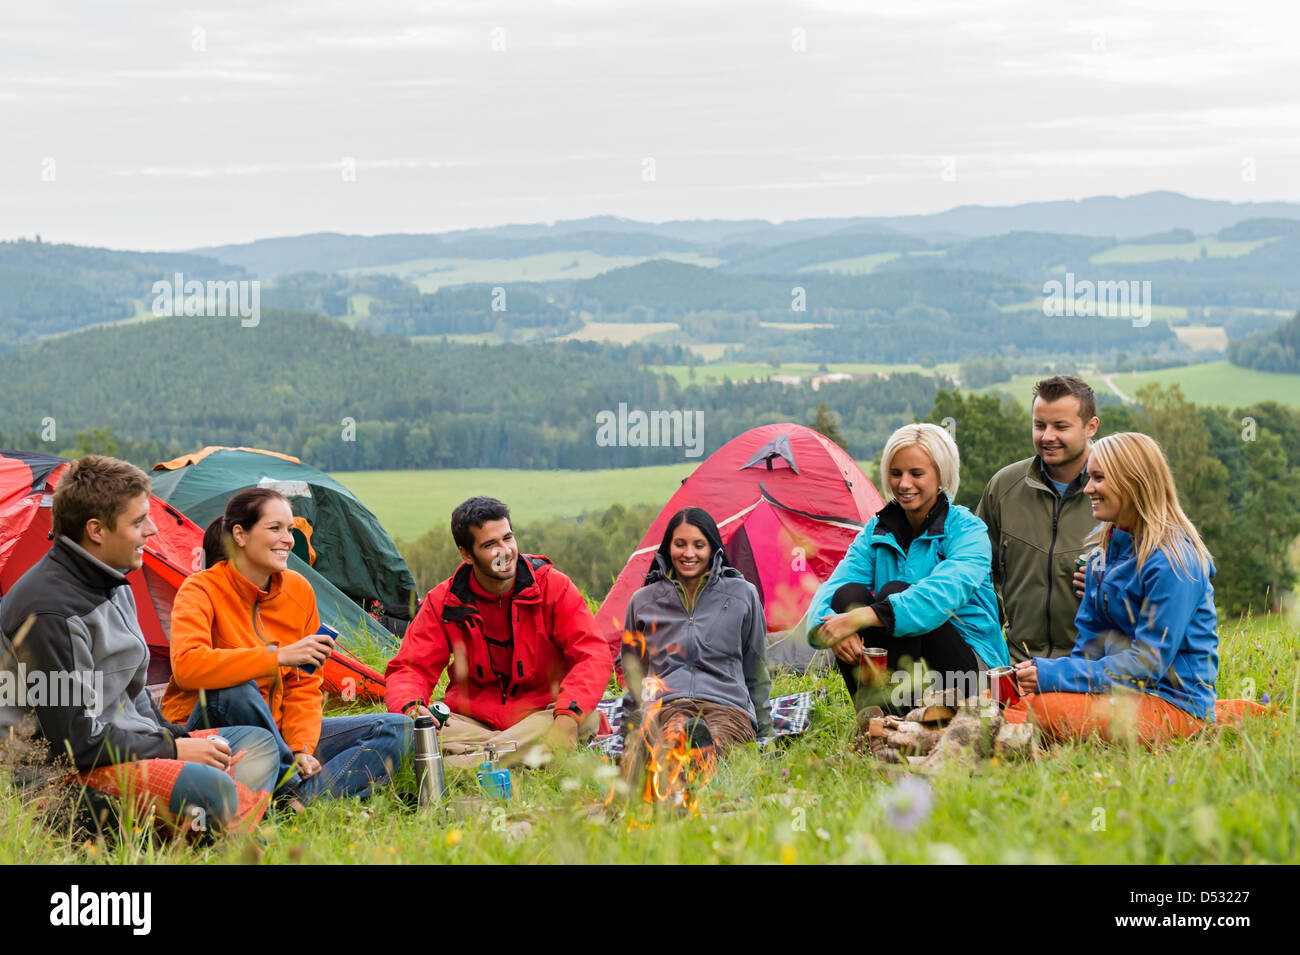 Smiling young people enjoying nature à côté des tentes et vue panoramique Banque D'Images